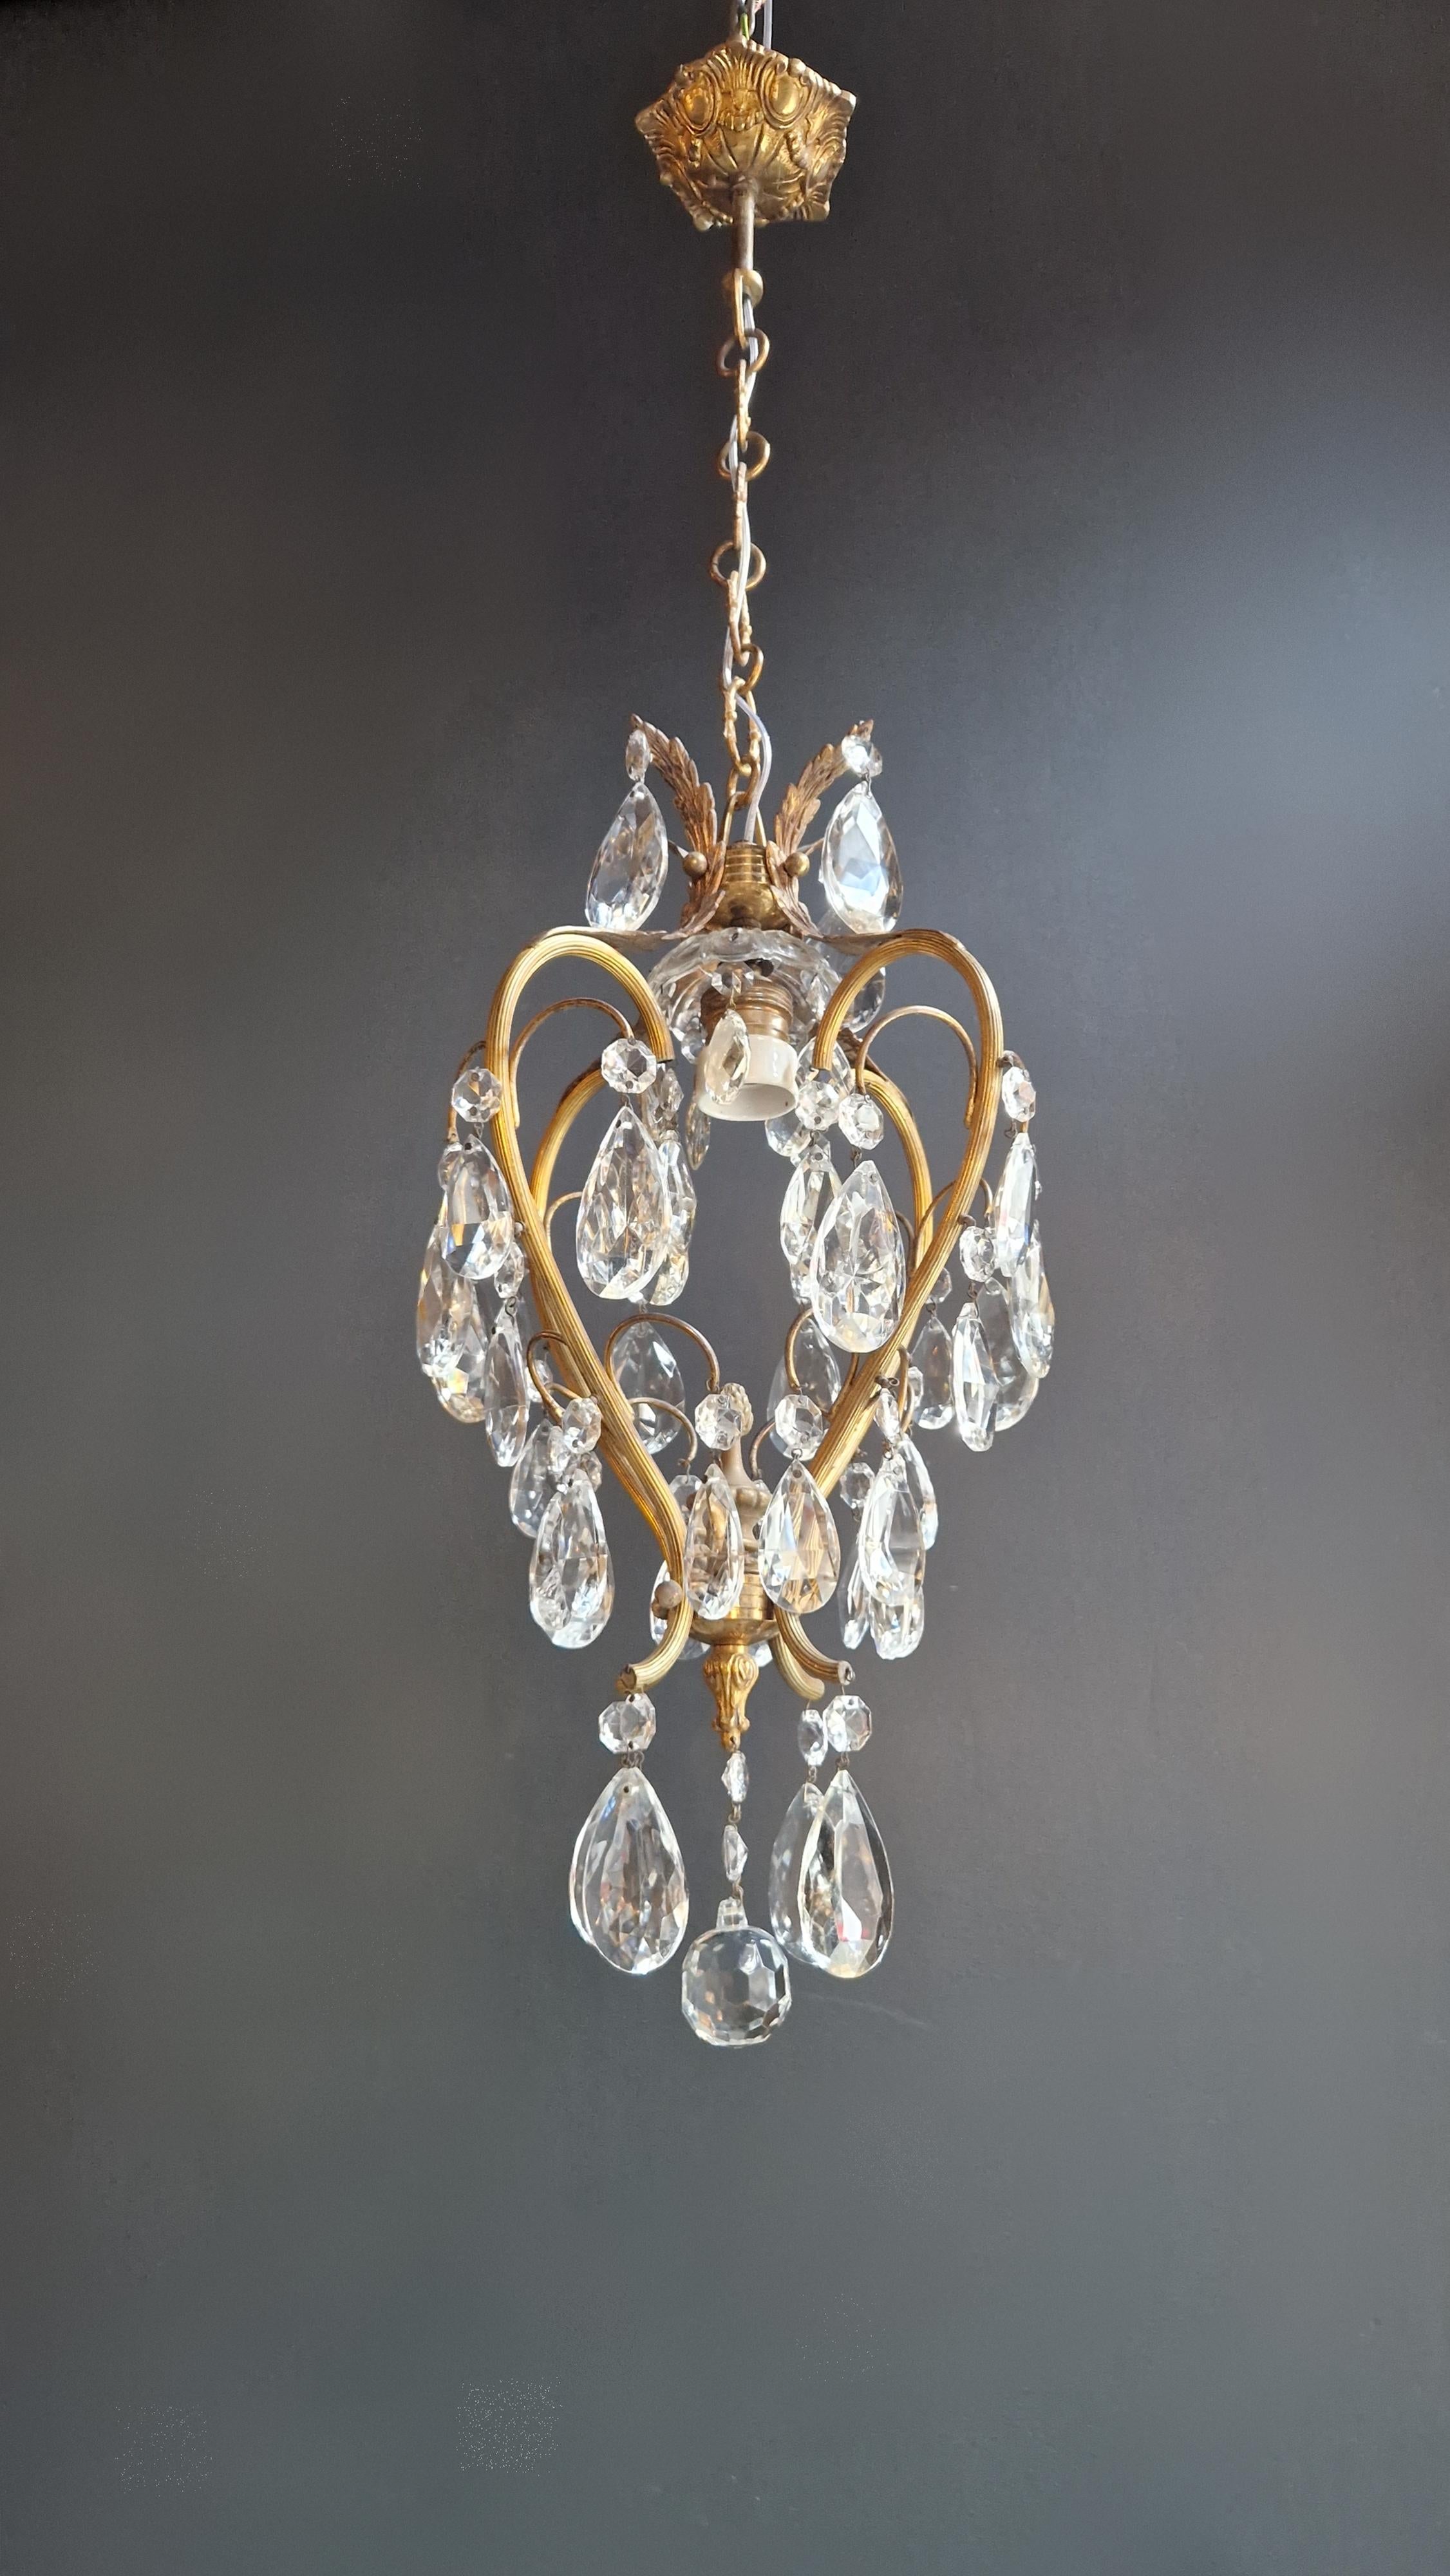 Hand-Knotted Lustré Cage Chandelier Crystal Ceiling Lamp Hall Lustre Antique Art Nouveau For Sale